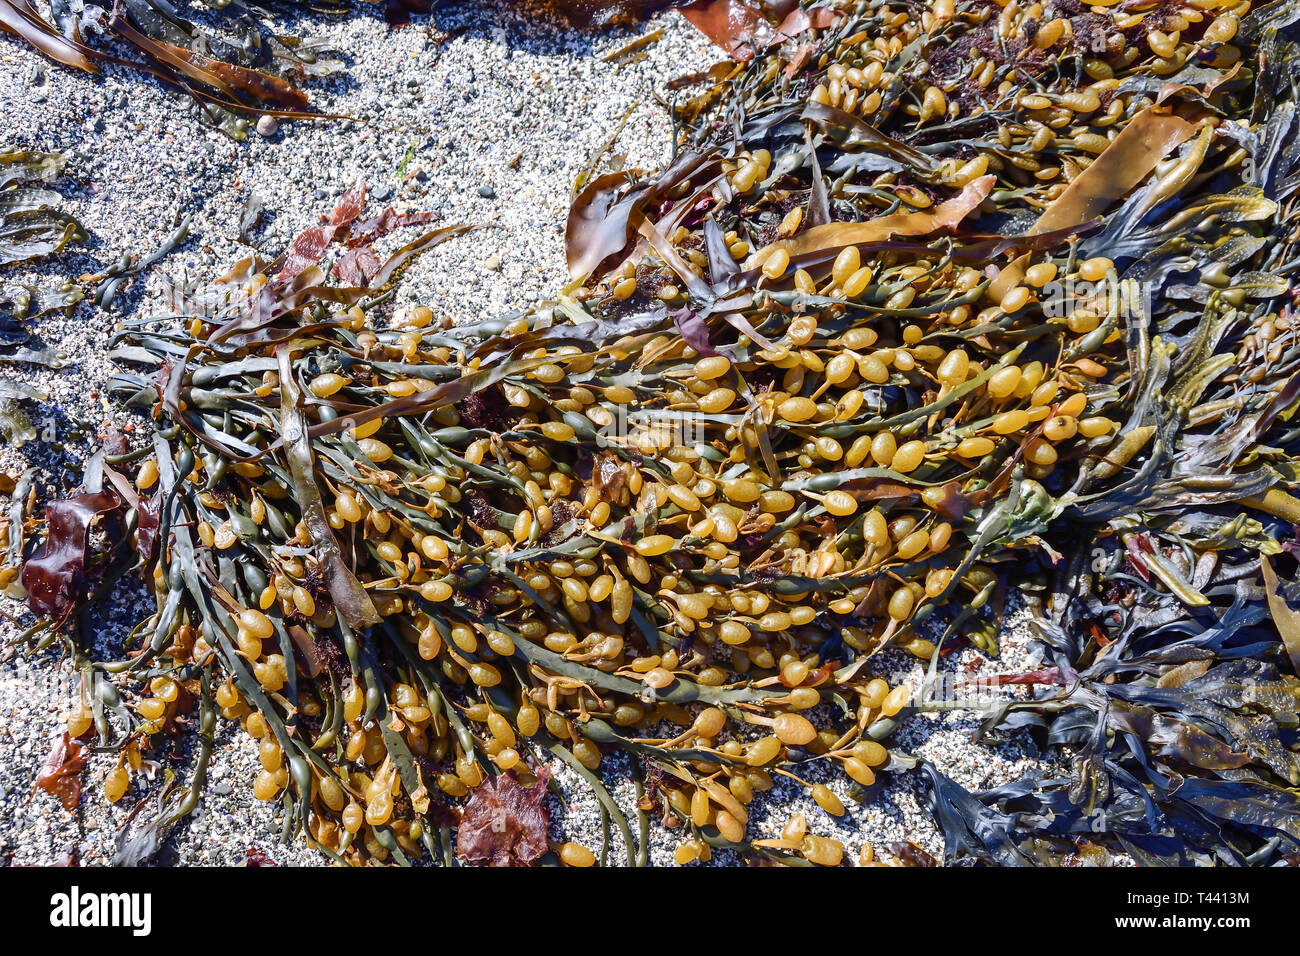 Les algues allongé sur le sable de la plage, la Brough de Birsay Island, Birsay, Mainland, îles Orcades, îles du Nord, Ecosse, Royaume-Uni Banque D'Images